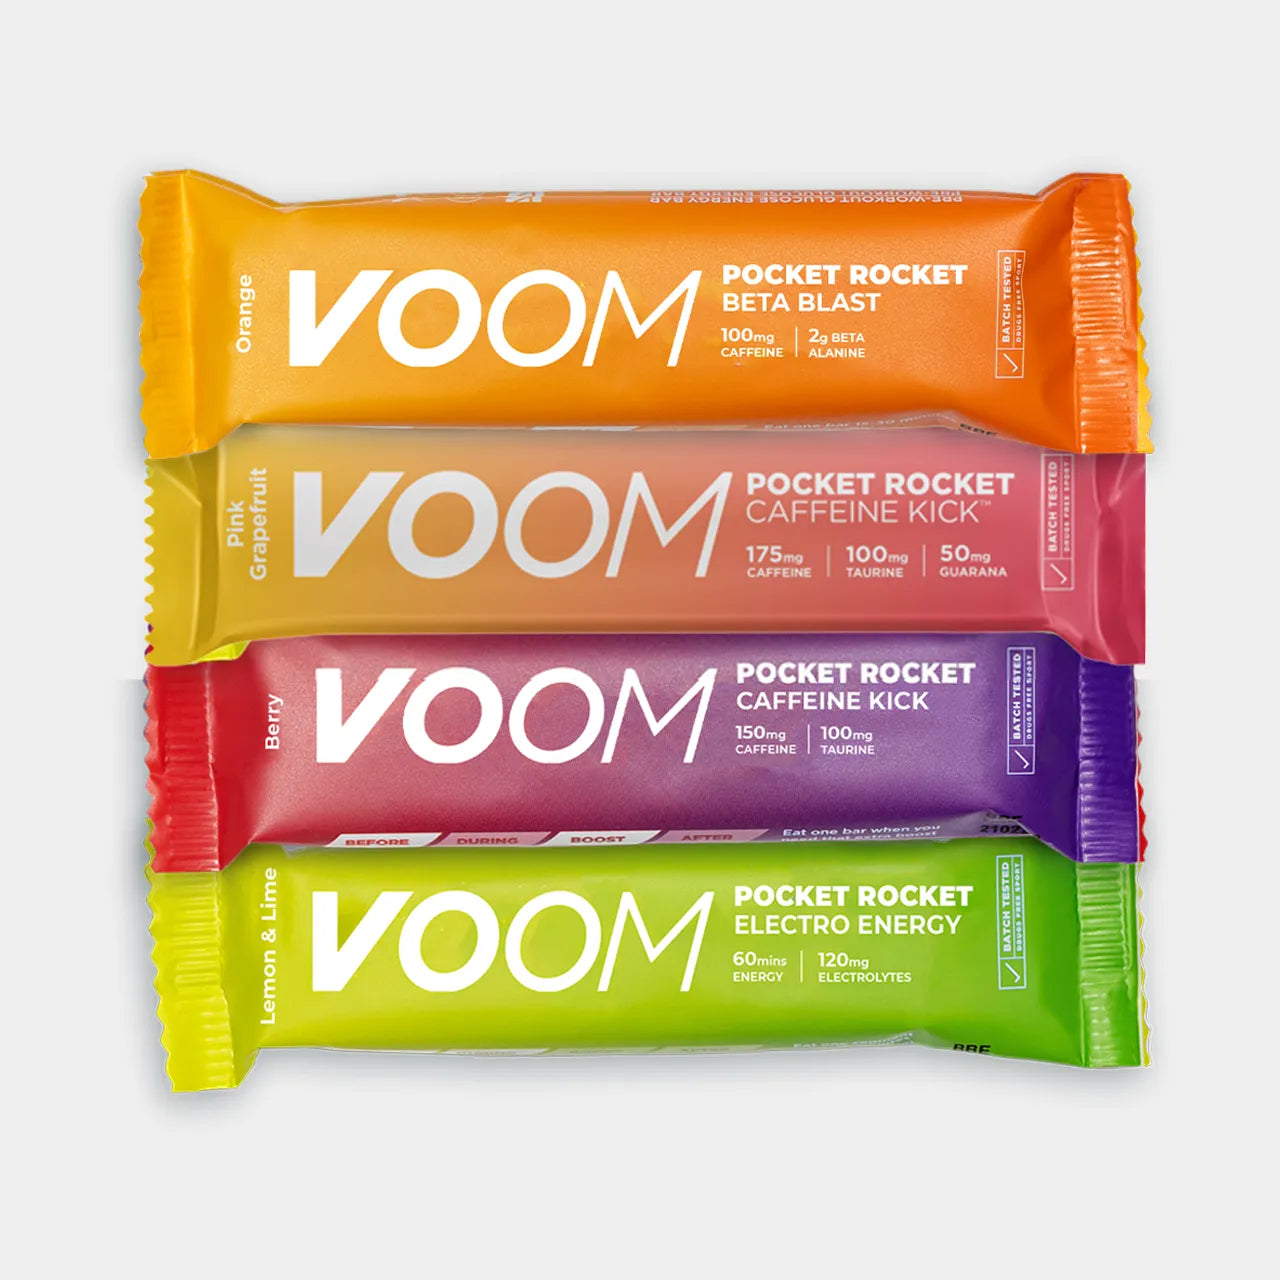 VOOM Pocket Rocket Energy Bar Taster Pack